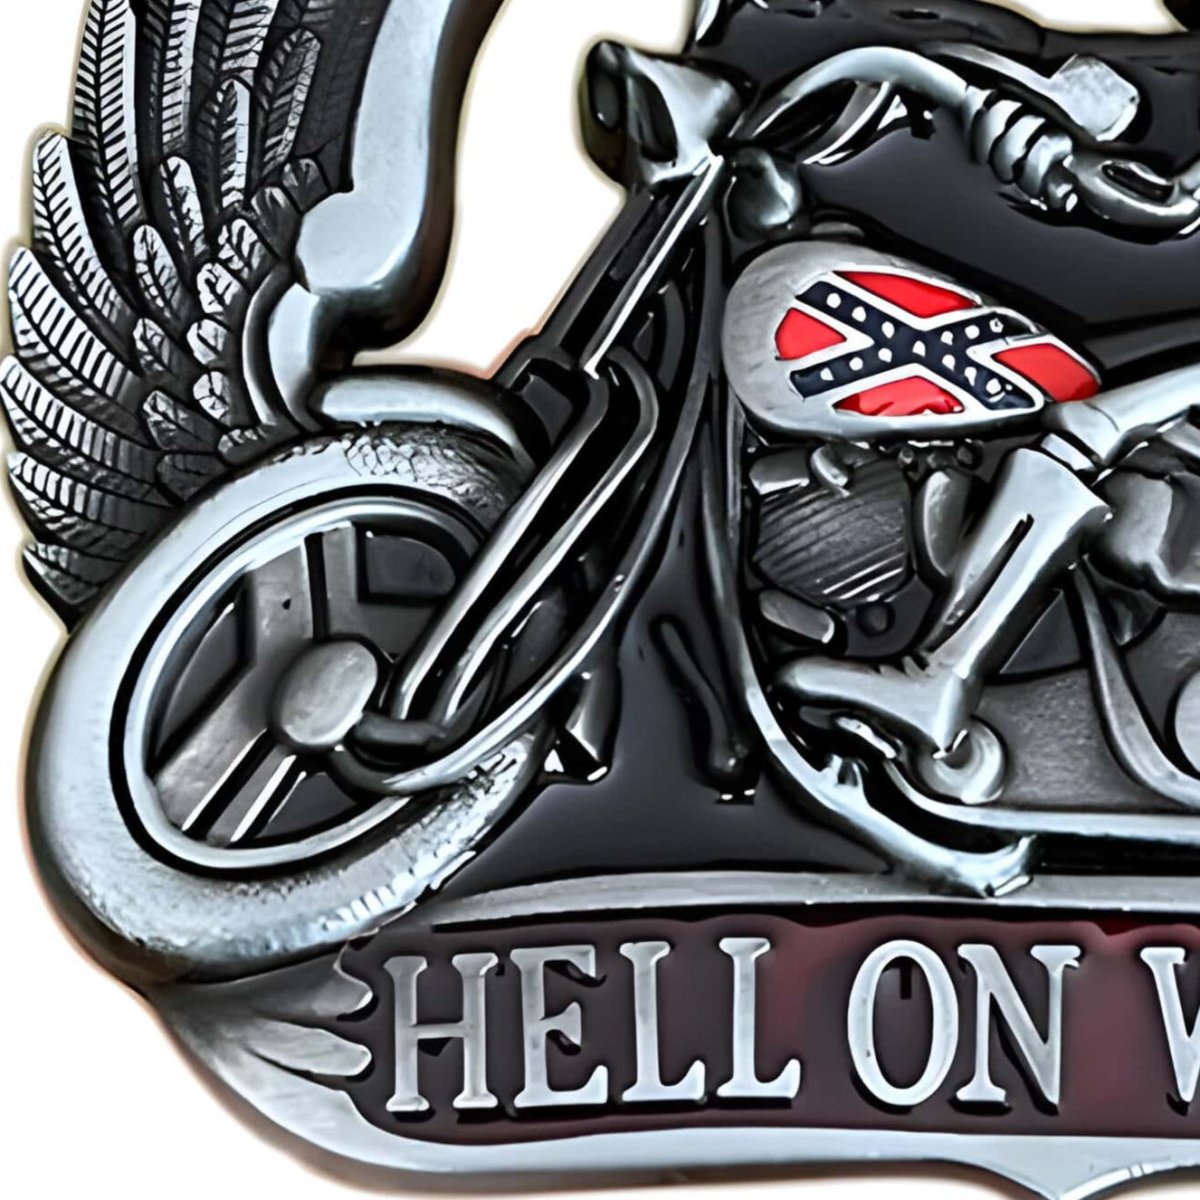 Boucle de ceinture Moto, "Hell on the weels", modèle Bowen - La Boutique de la Ceinture